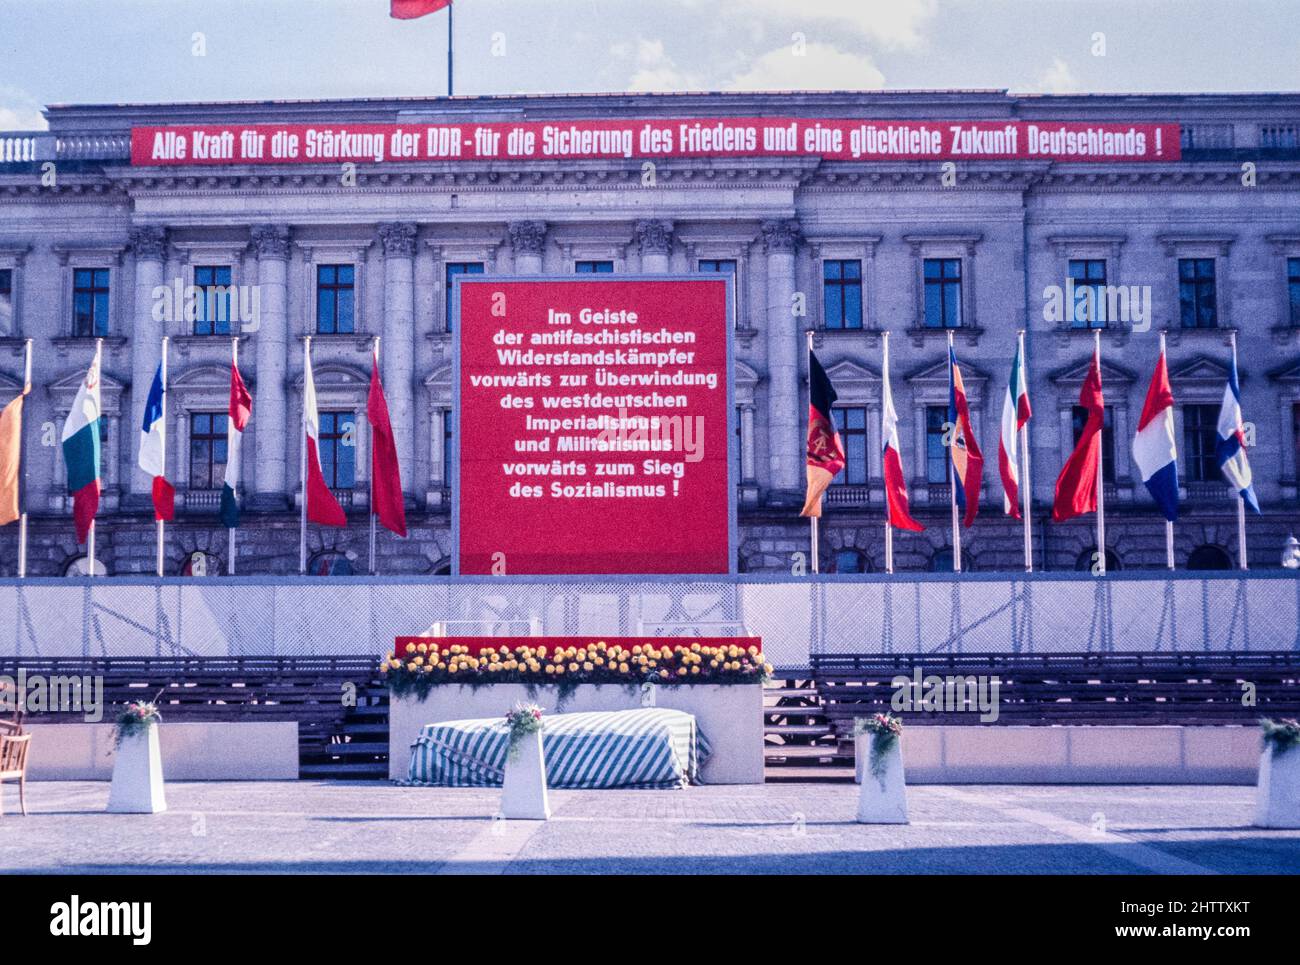 Berlin est, 1962. Exhortations communistes pour renforcer le DDR et le socialisme et vaincre l'impérialisme ouest-allemand. Banque D'Images